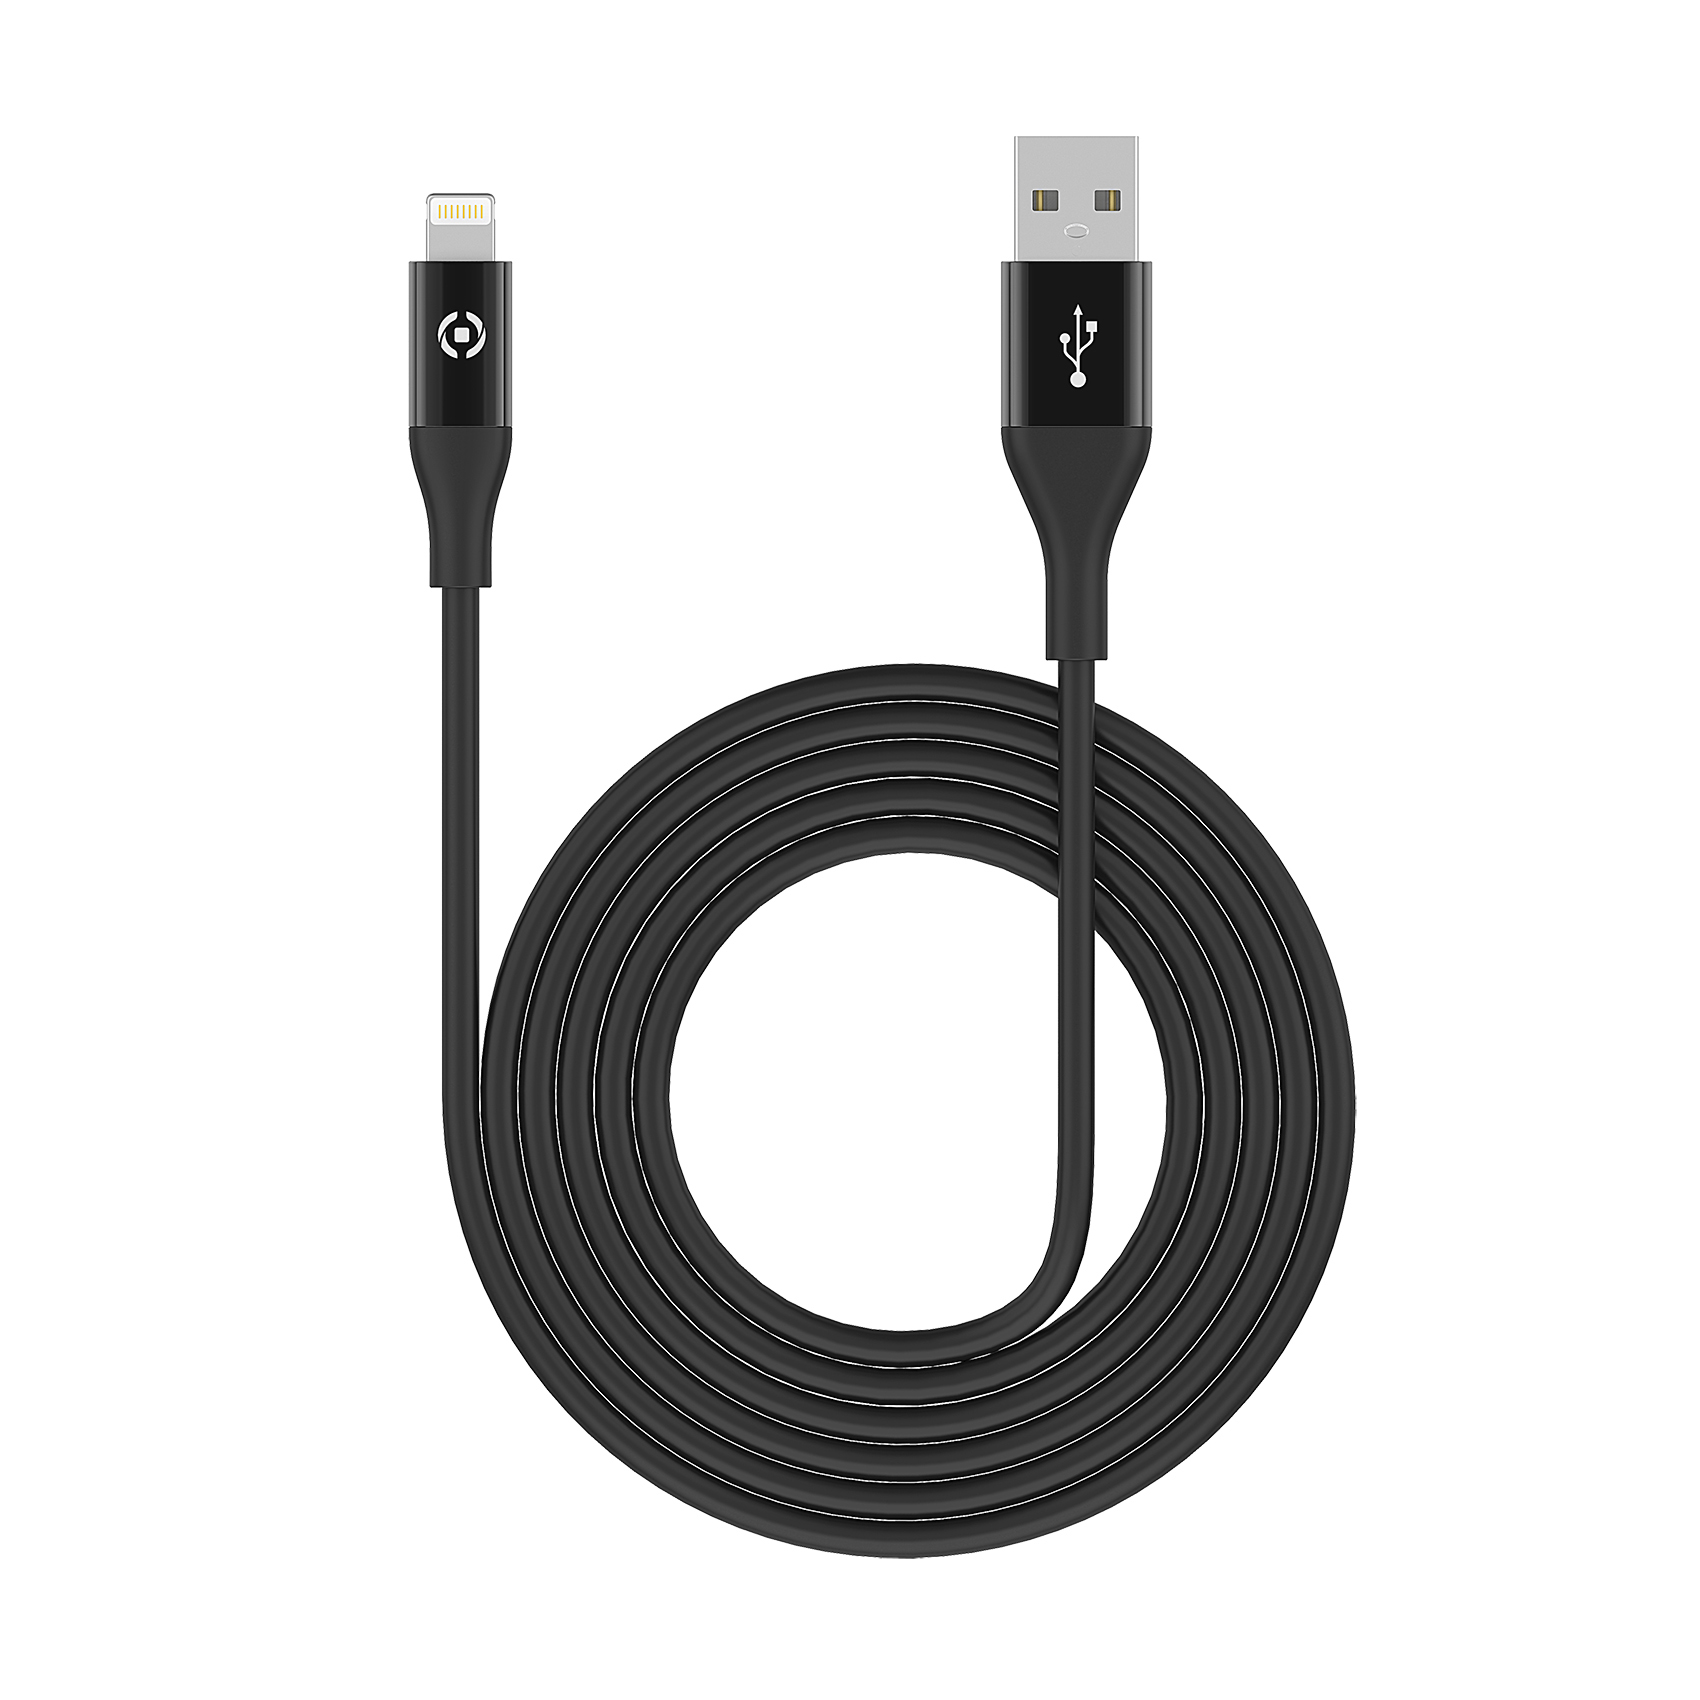 CELLY USB - LIGHTNING kabl za iPhone u CRNOJ boji slika 4